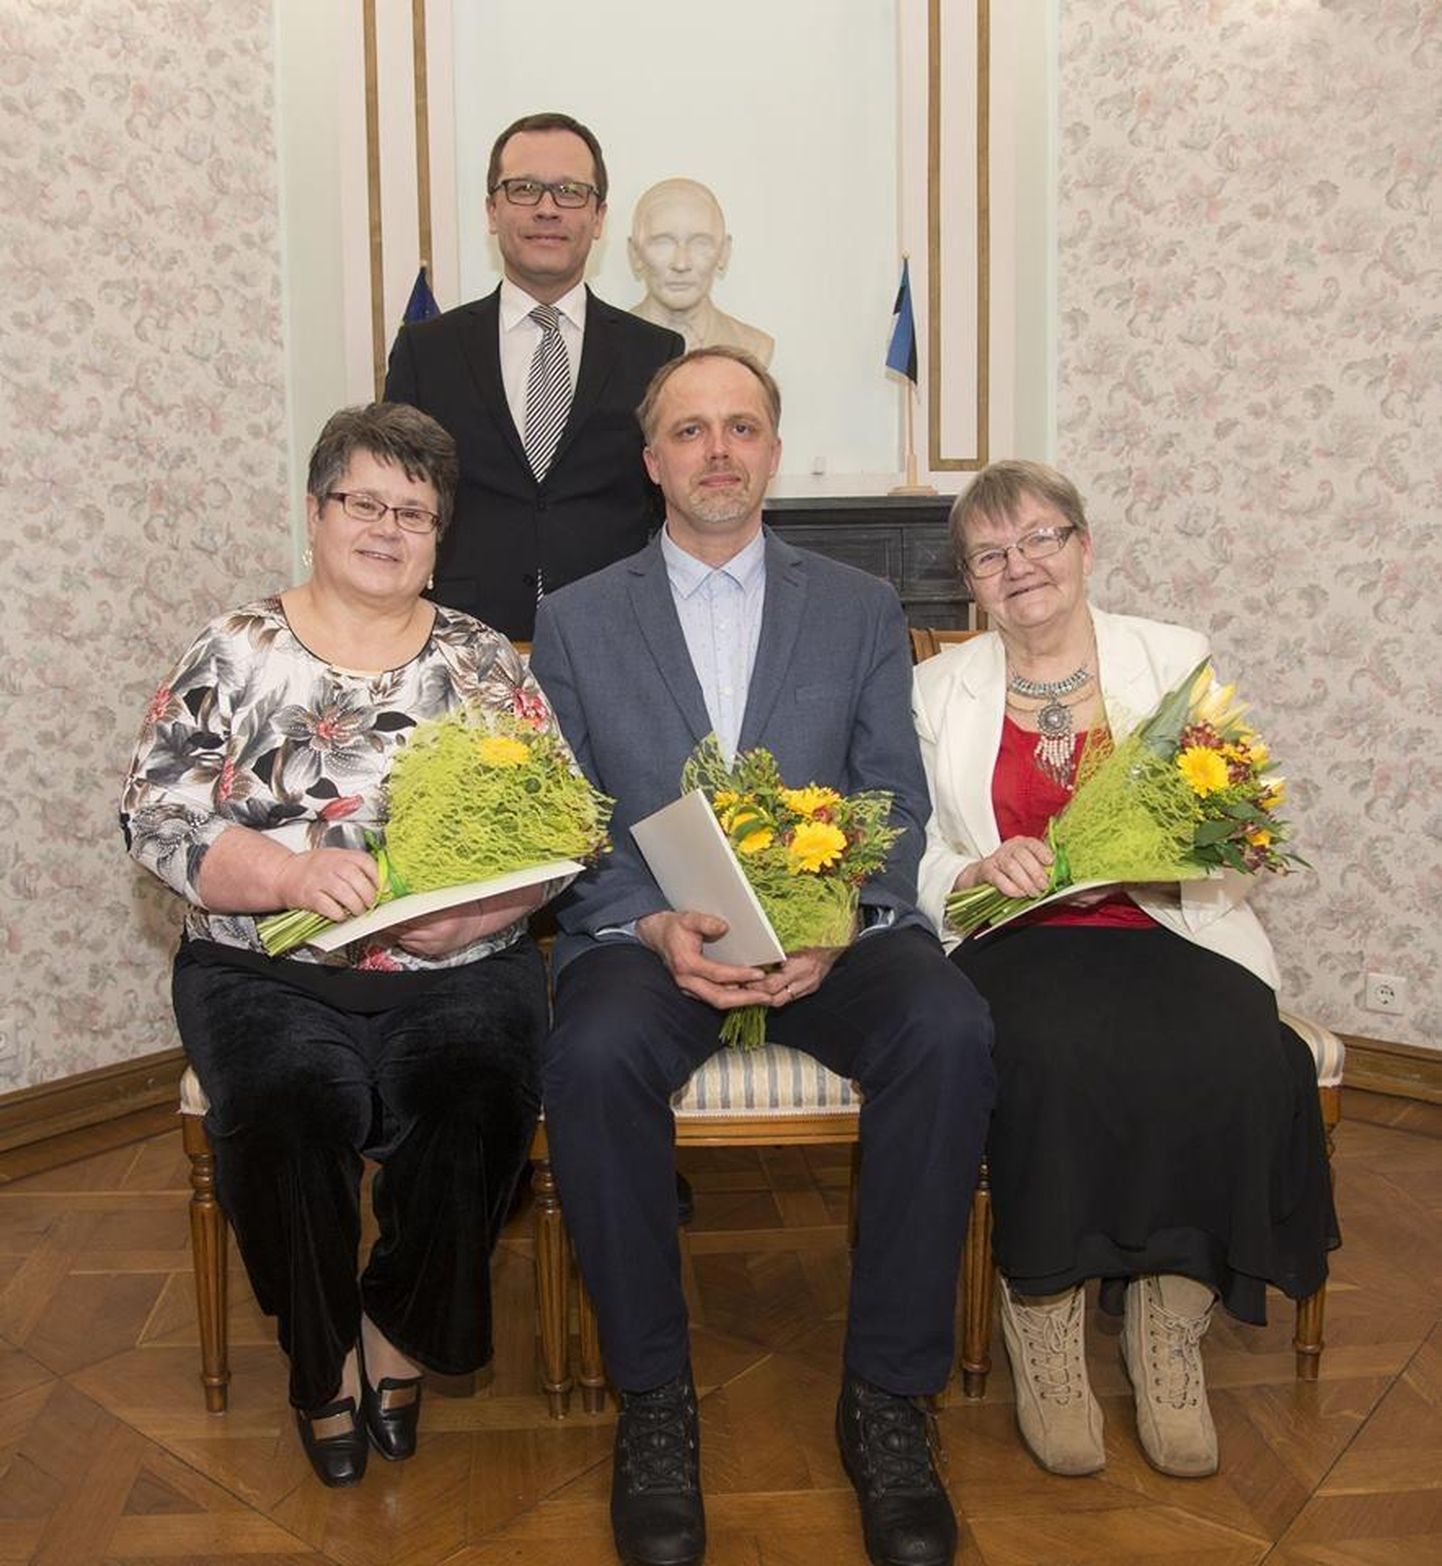 Presidendi rahvaluulepreemia laureaadid (vasakult) Maie Matvei, Ergo-Hart Västrik ja Ene Raudkats koos Tartu linnapea Urmas Klaasiga Eesti kirjandusmuuseumi kaminasaalis.